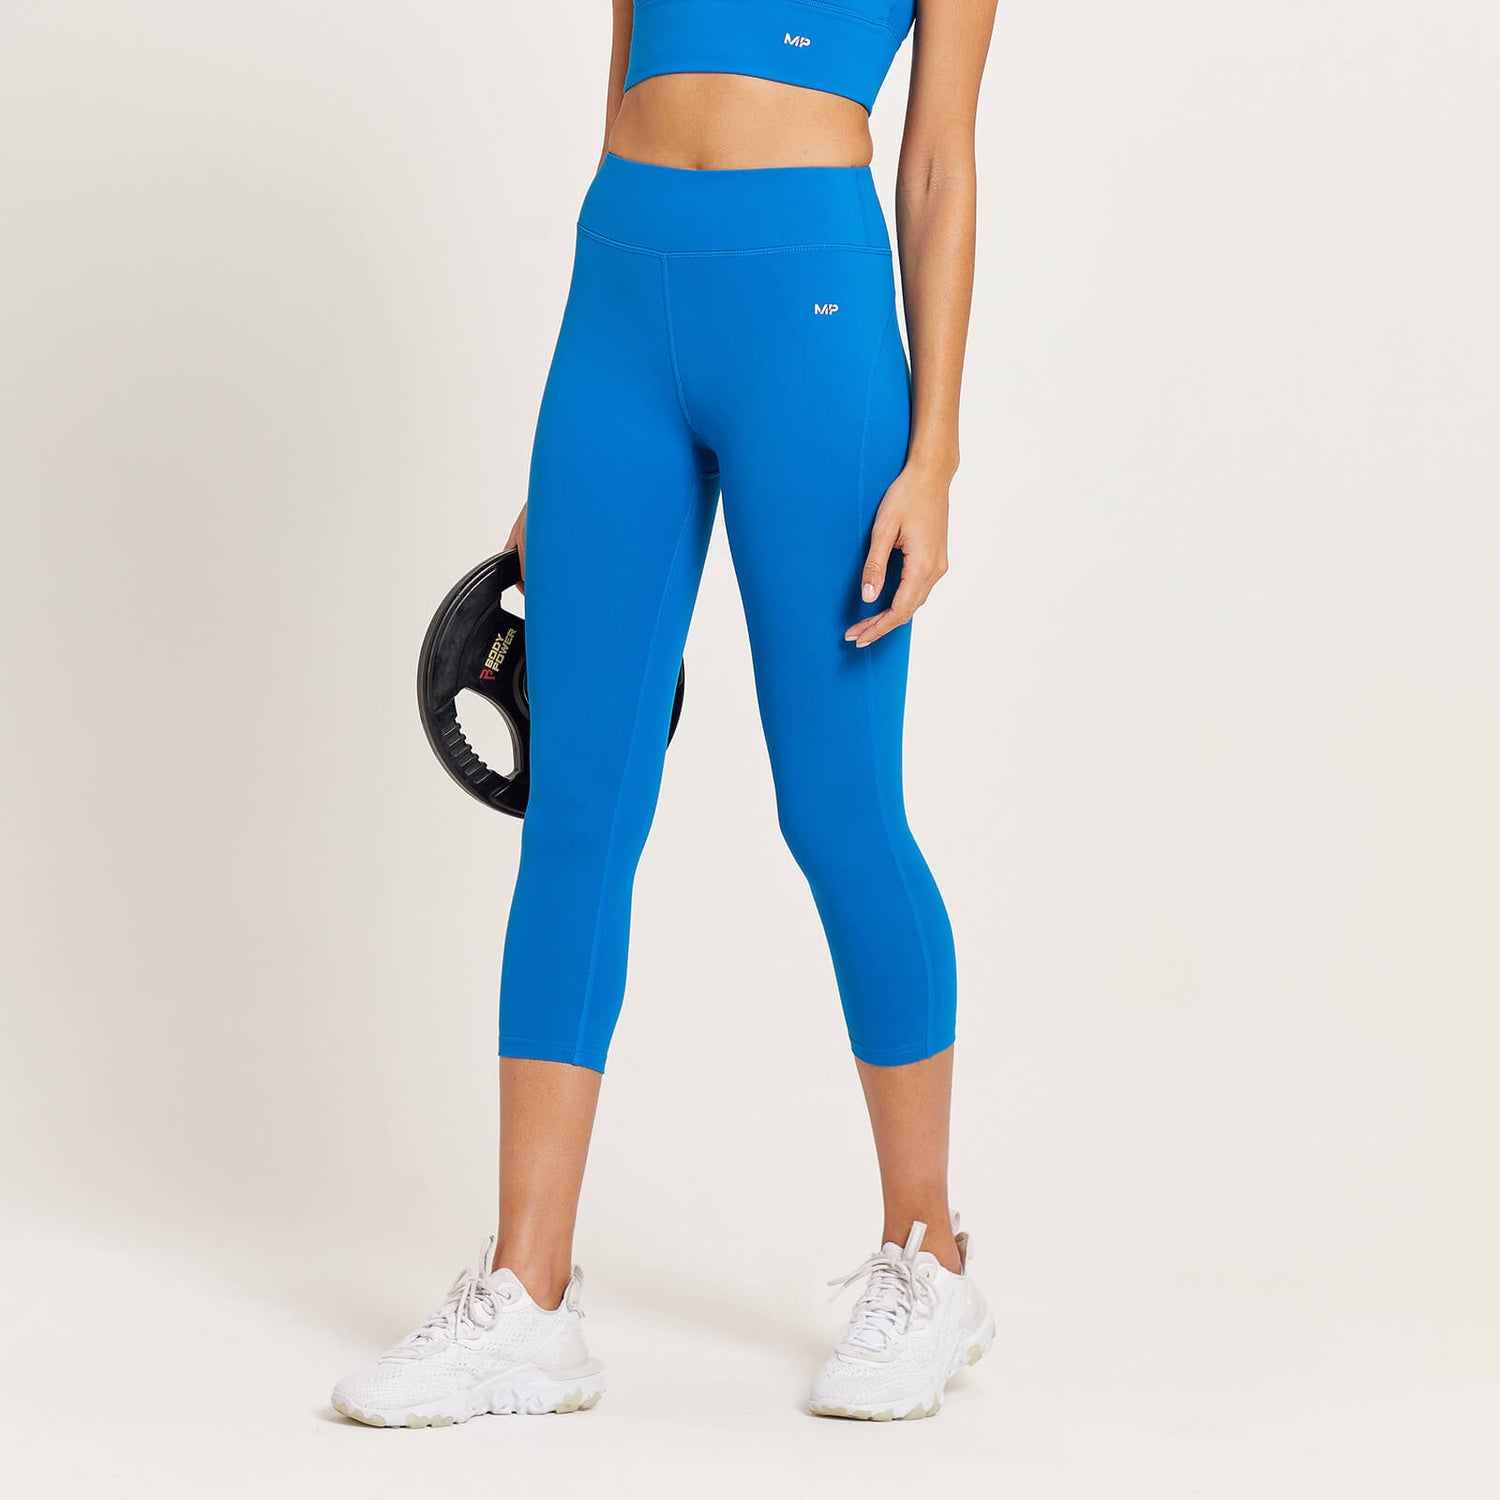 Naisten MP 3/4 Power -leggingsit - Voimakkaan sininen - XXS